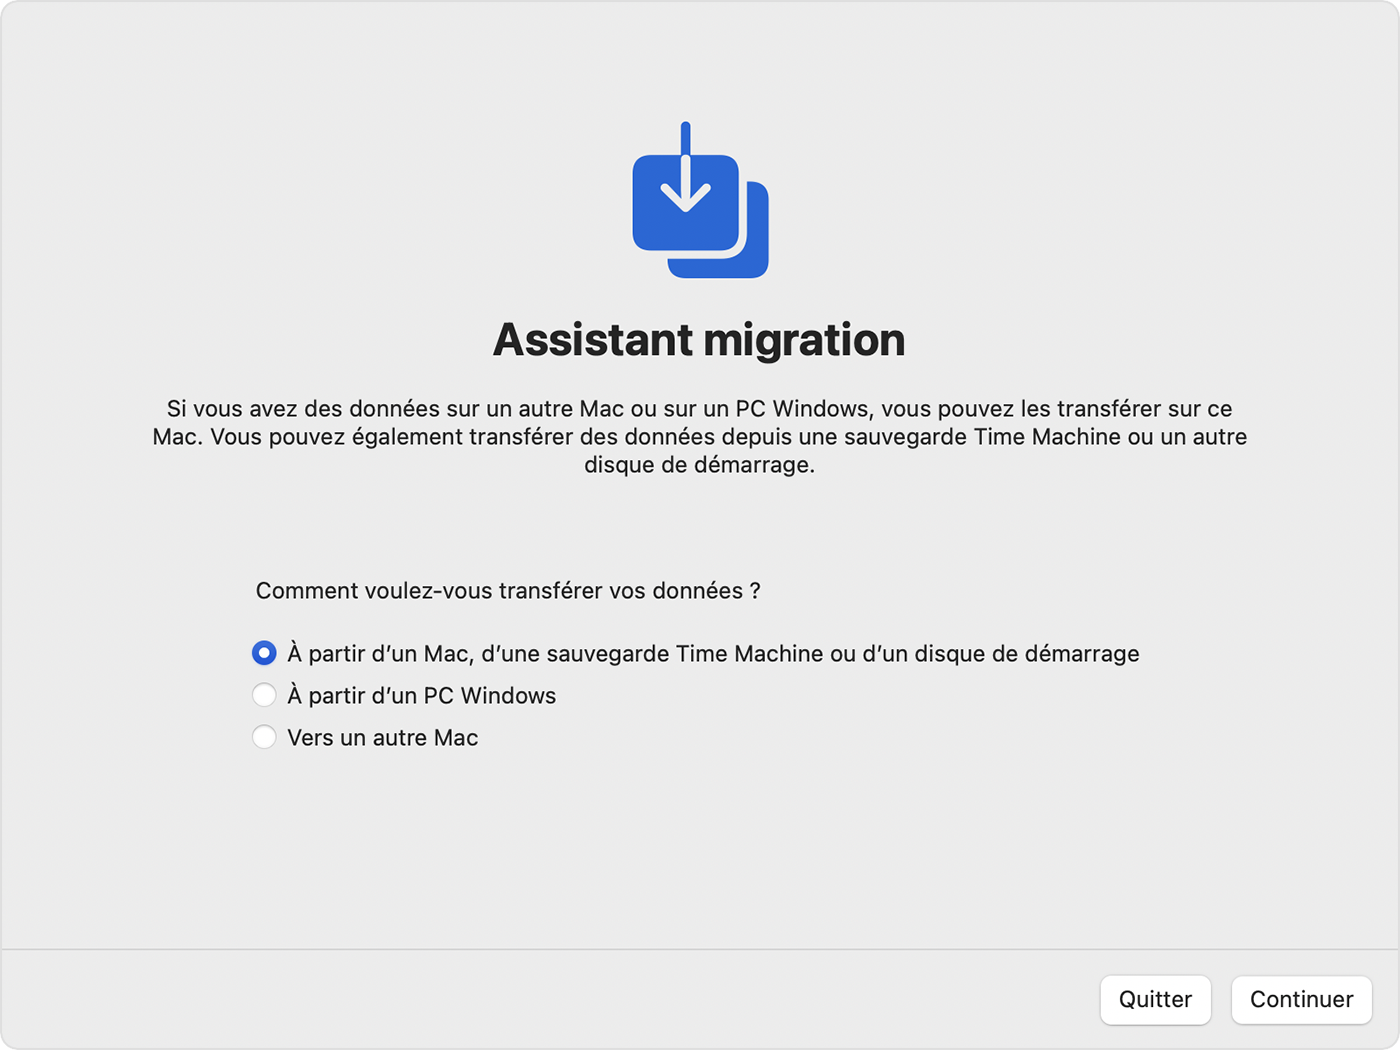 Assistant migration : Comment voulez-vous transférer vos données ?